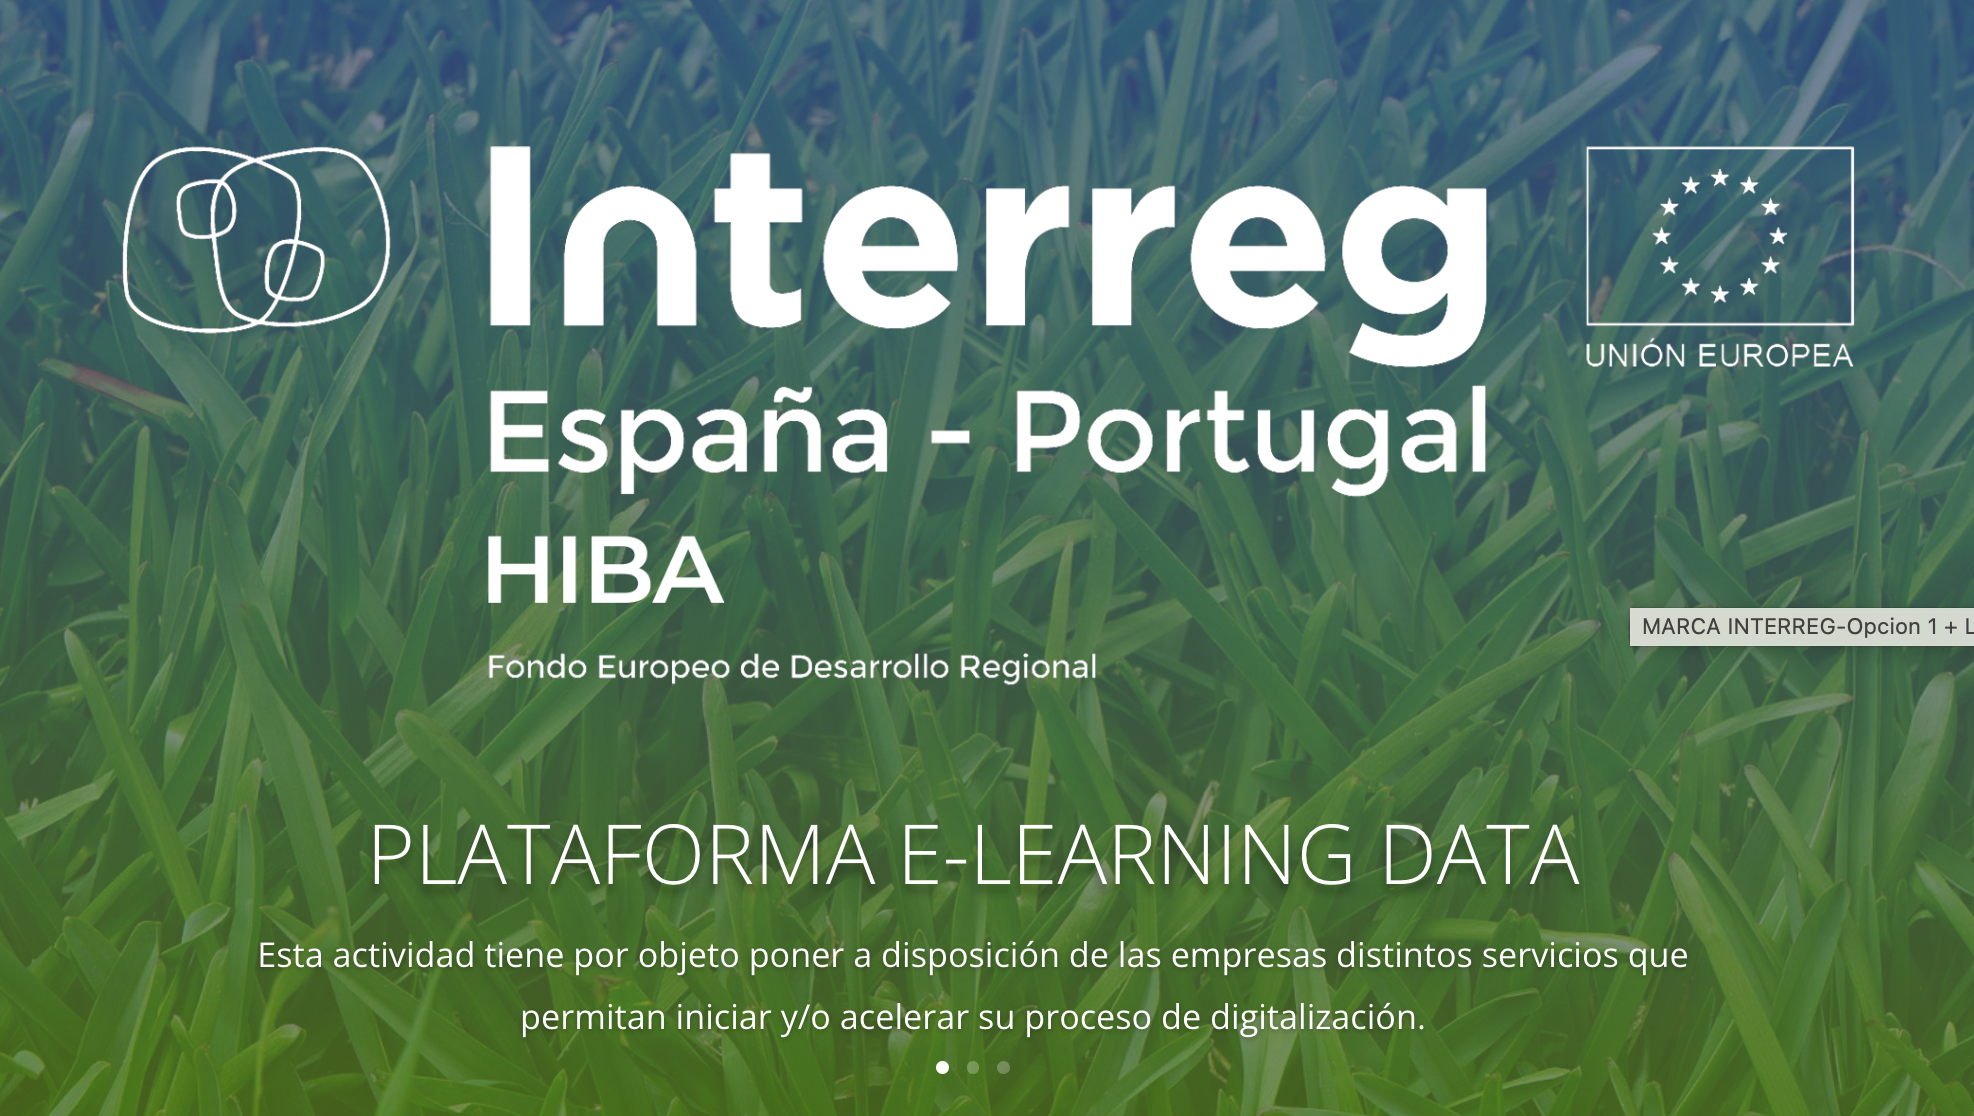 Plataforma E-Learning Data